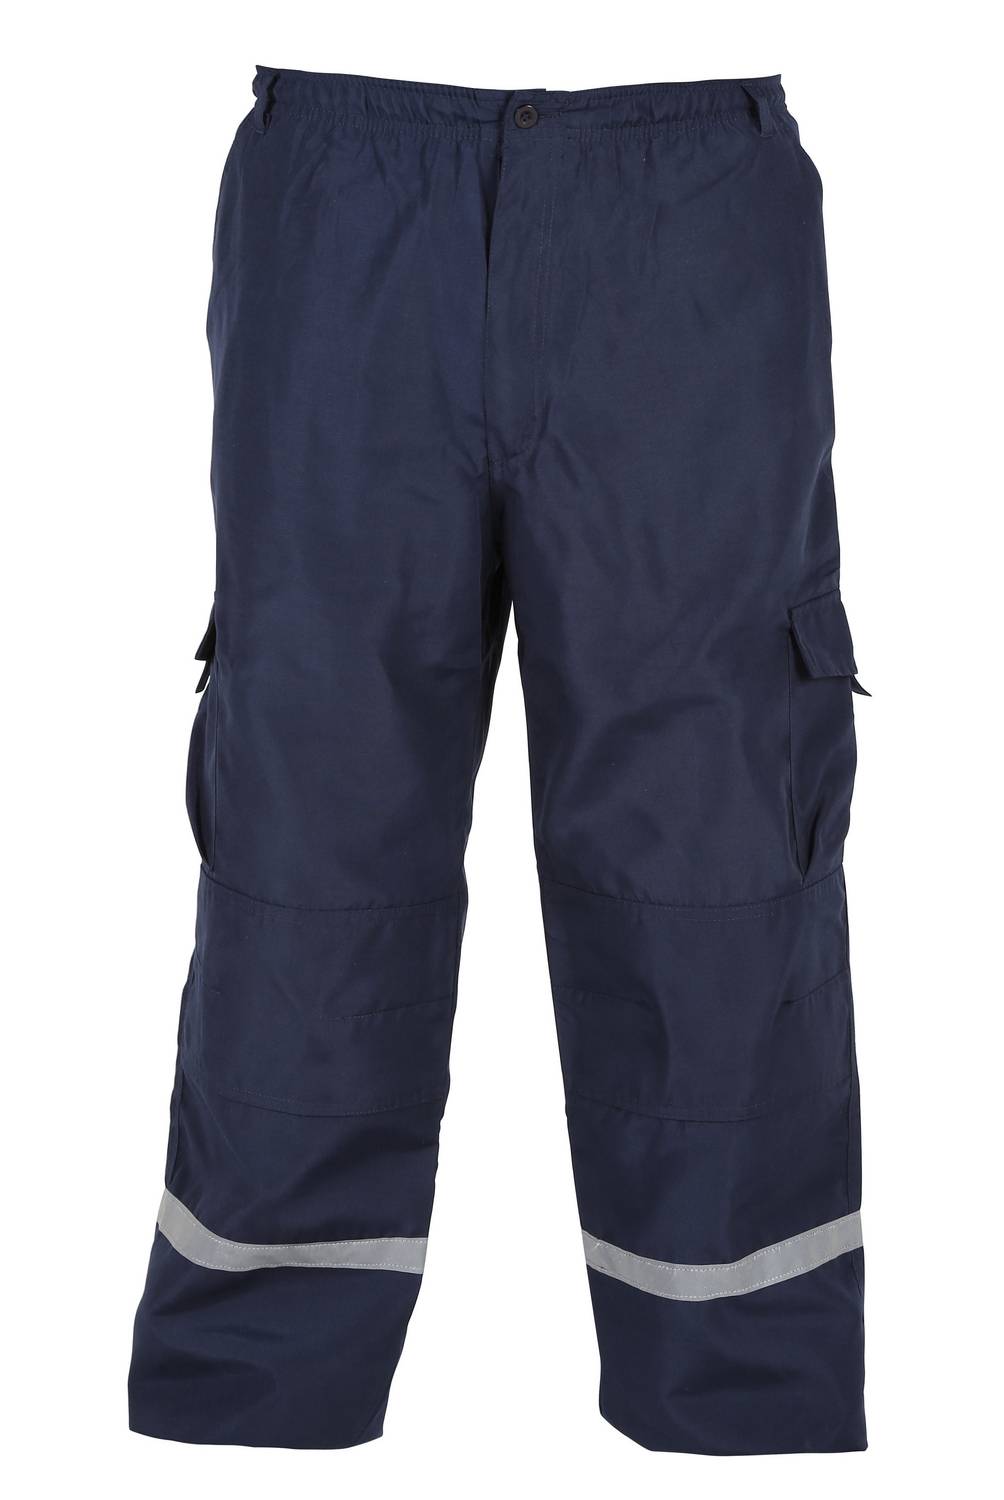 ALASKA - Pantalón de trabajo cargo multibolsillos, poplin azul marino talla m